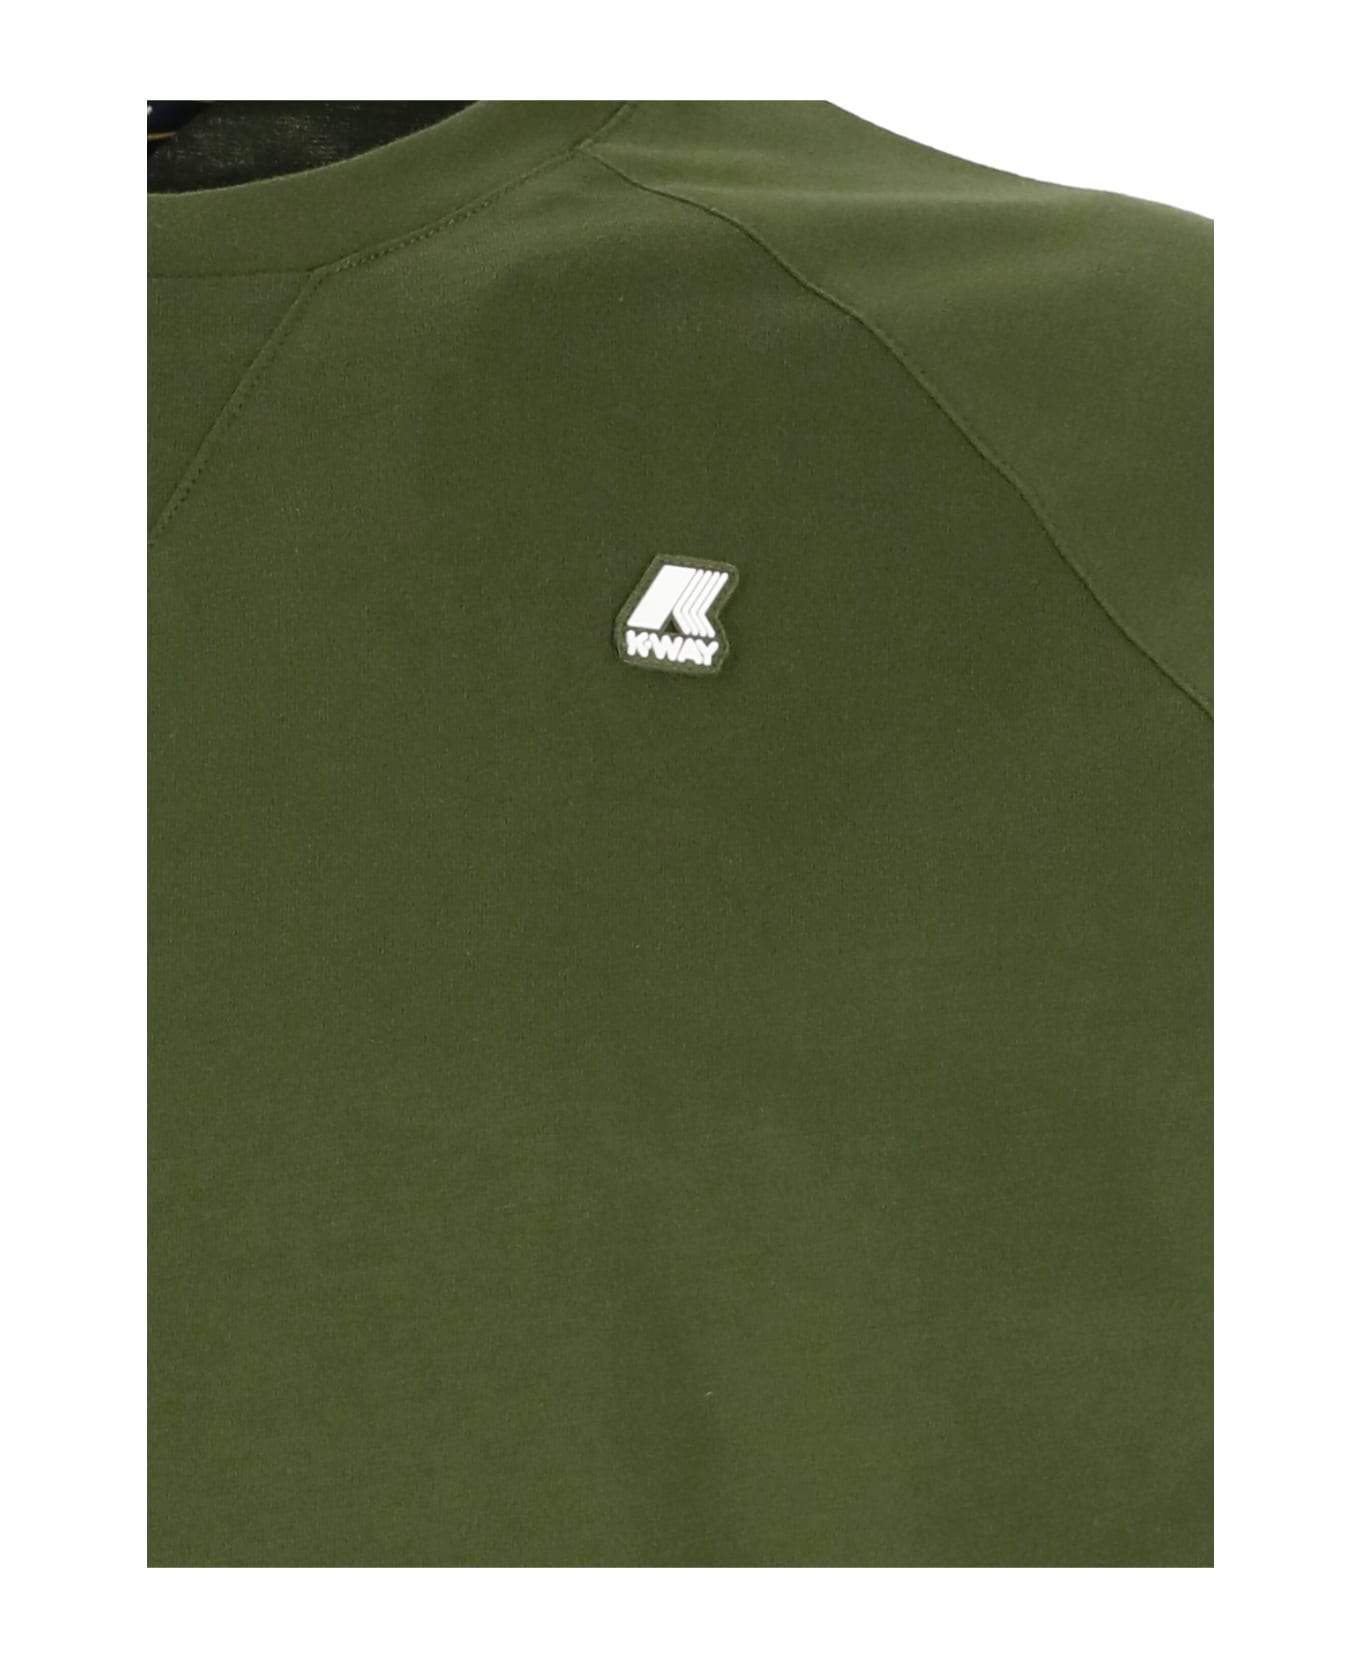 K-Way Edwing T-shirt - Green シャツ